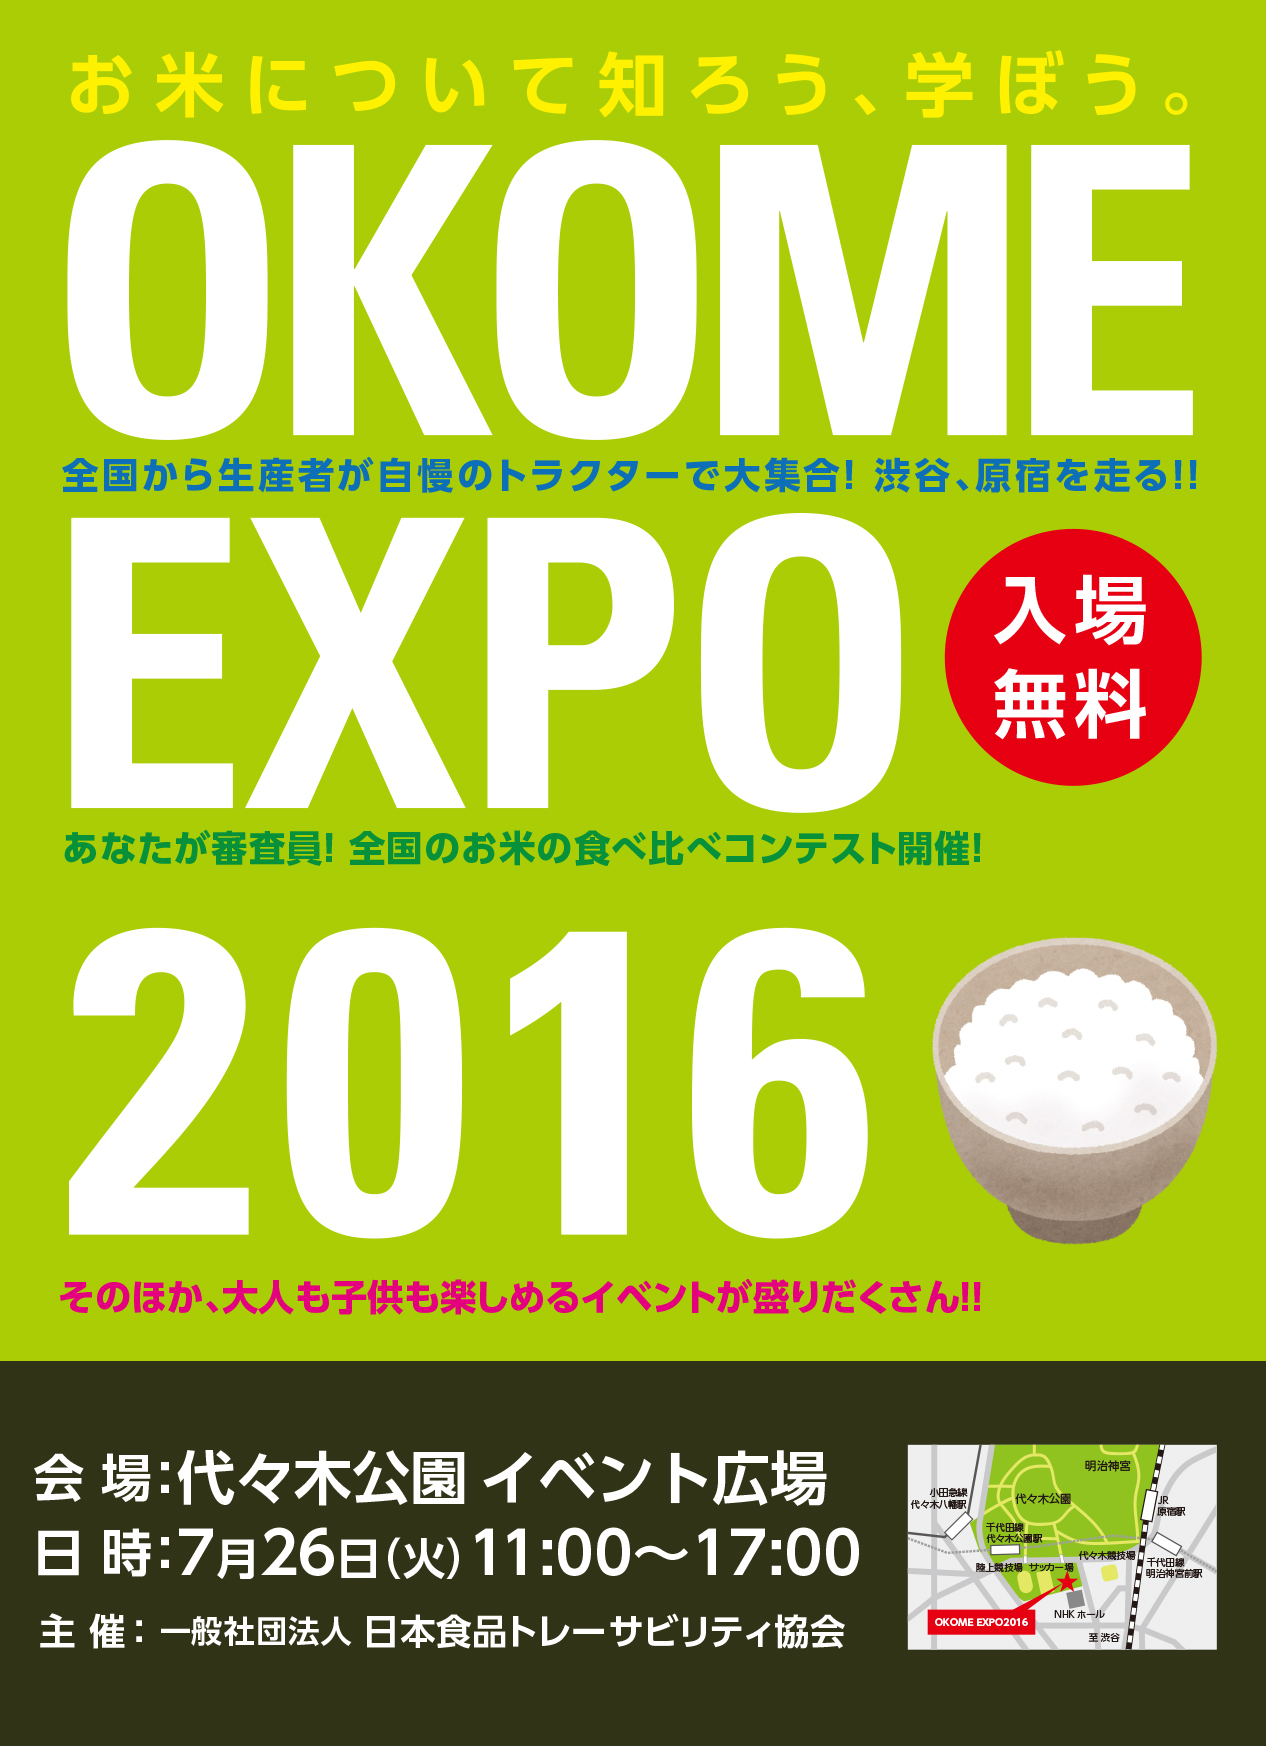 お米expo 2016 で国産米をもっと知ろう あなたが審査員 全国30種類のお米食べ比べコンテスト開催 一般社団法人 日本食品 トレーサビリティ協会のプレスリリース